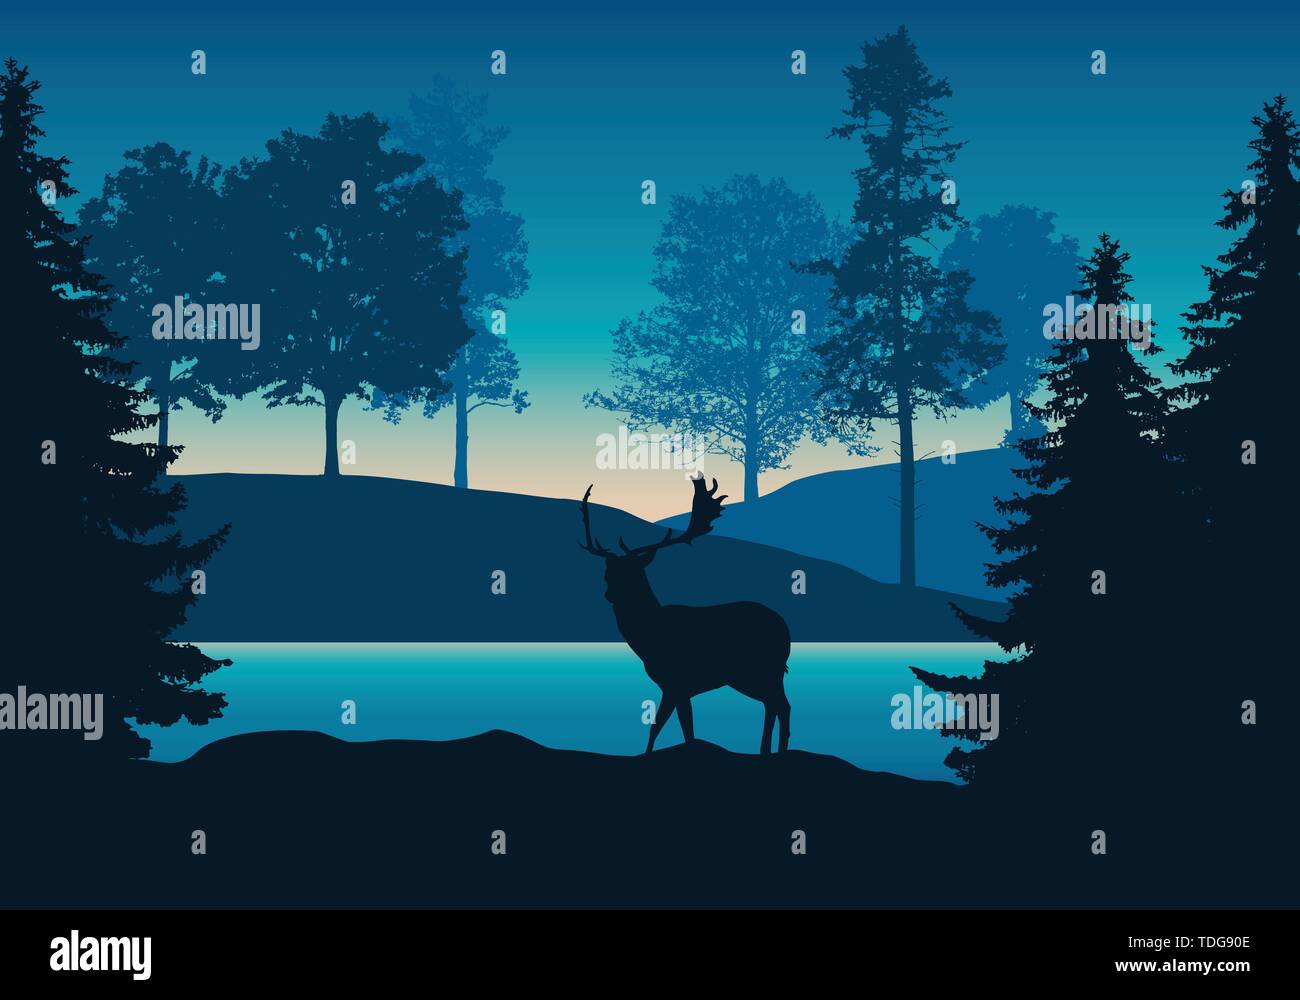 Illustration réaliste du paysage vallonné avec forêt, rivière ou lac deer permanent et sous le ciel bleu-vert avec dawn - vector Illustration de Vecteur